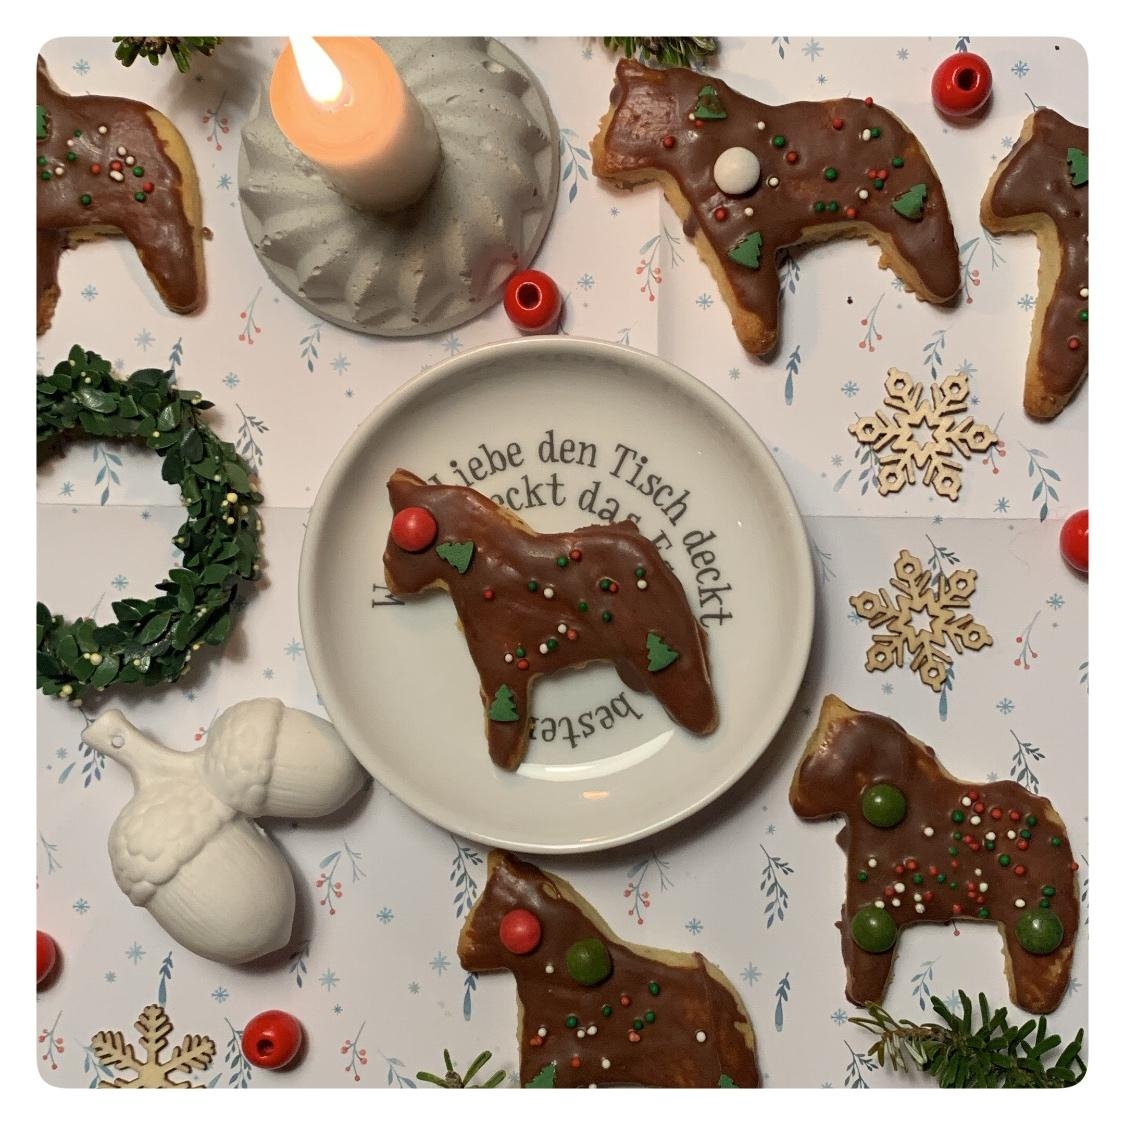 Auf die Plätzchen fertig los ! #xmas #weihnachtsplätzchen #kekse #foodlover #weihnachtsgebäck #hygge #weihnachtsbäckerei